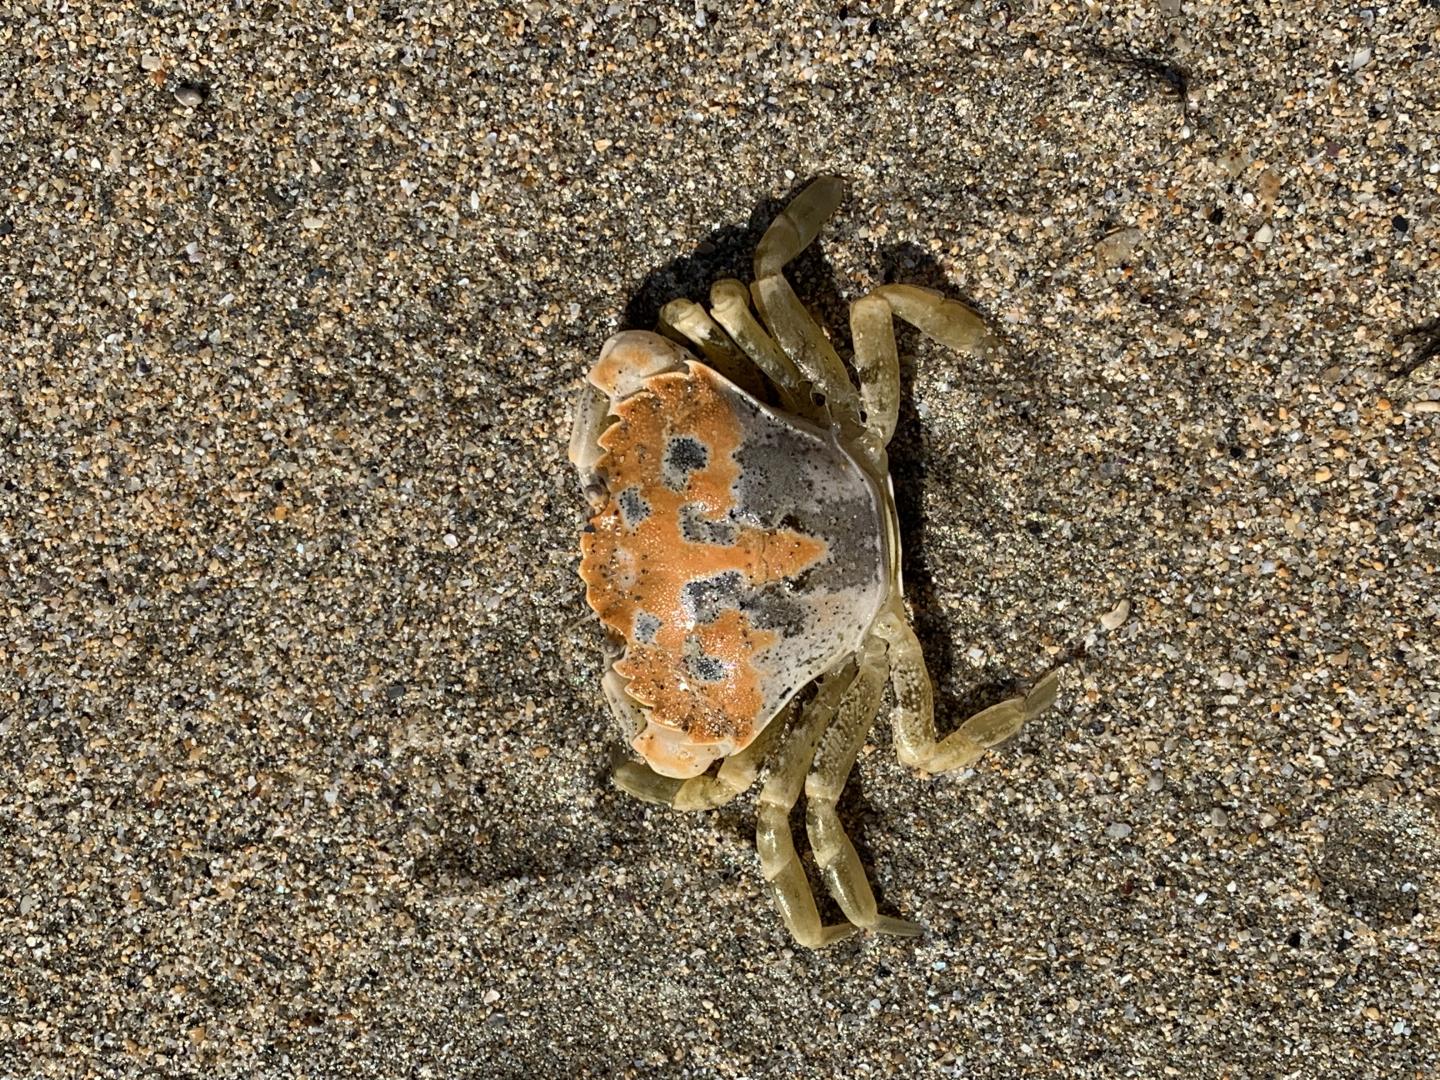 A Rock Pool Crab